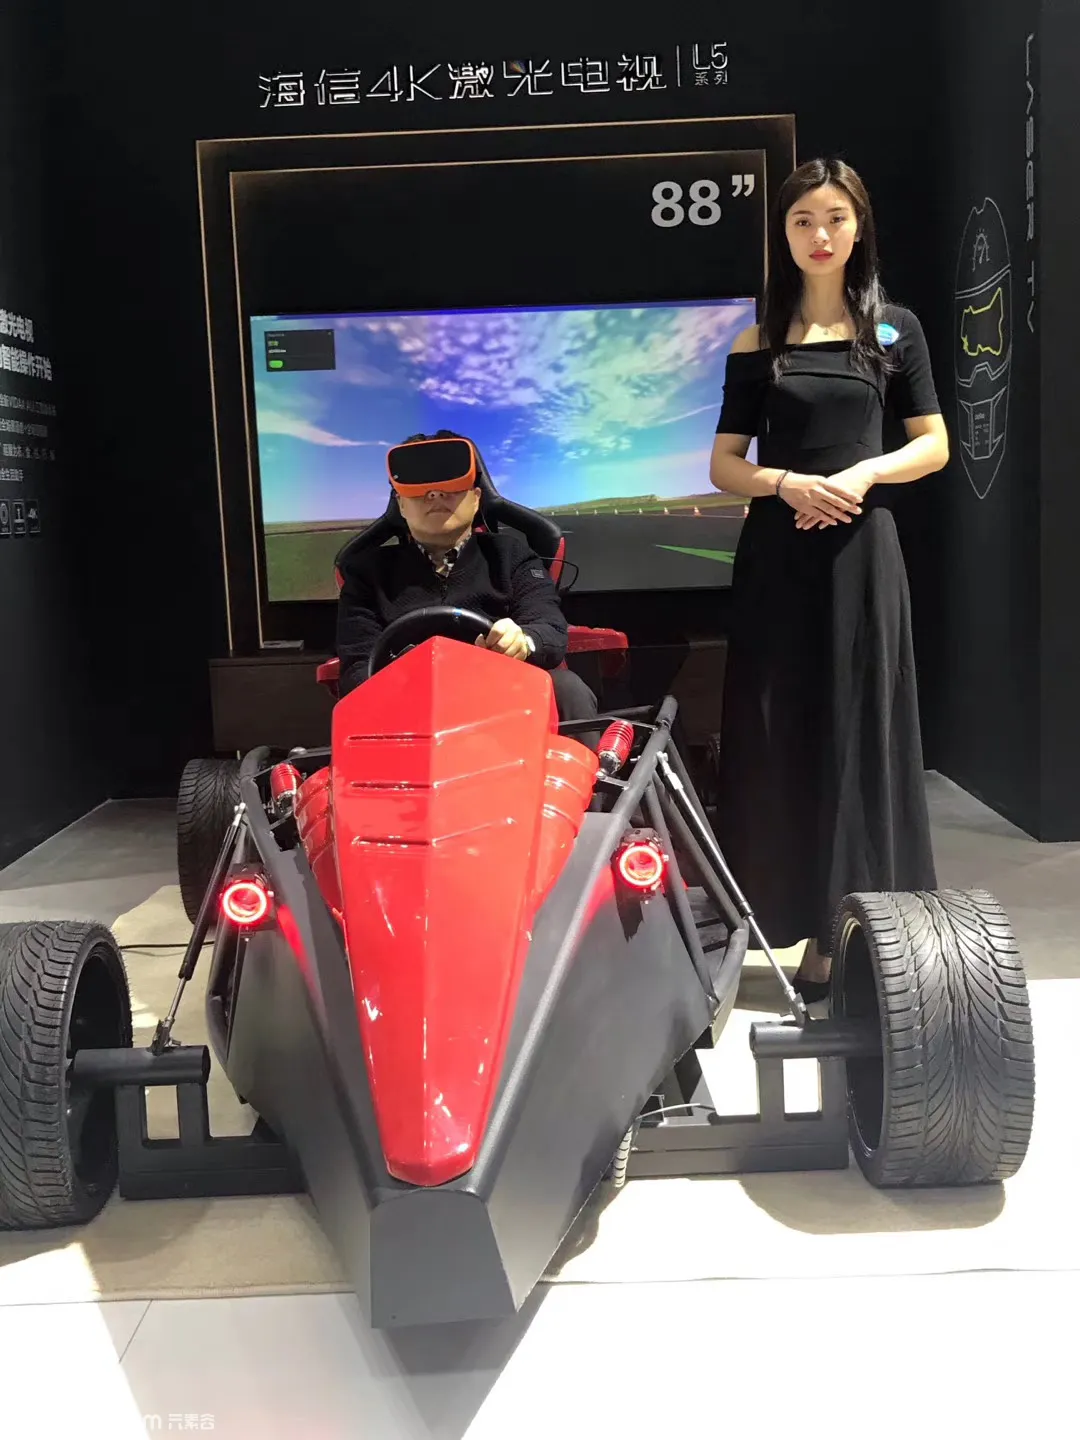 精品VR设备出租9成新vr赛车双人太空舱体感游戏一体机租赁